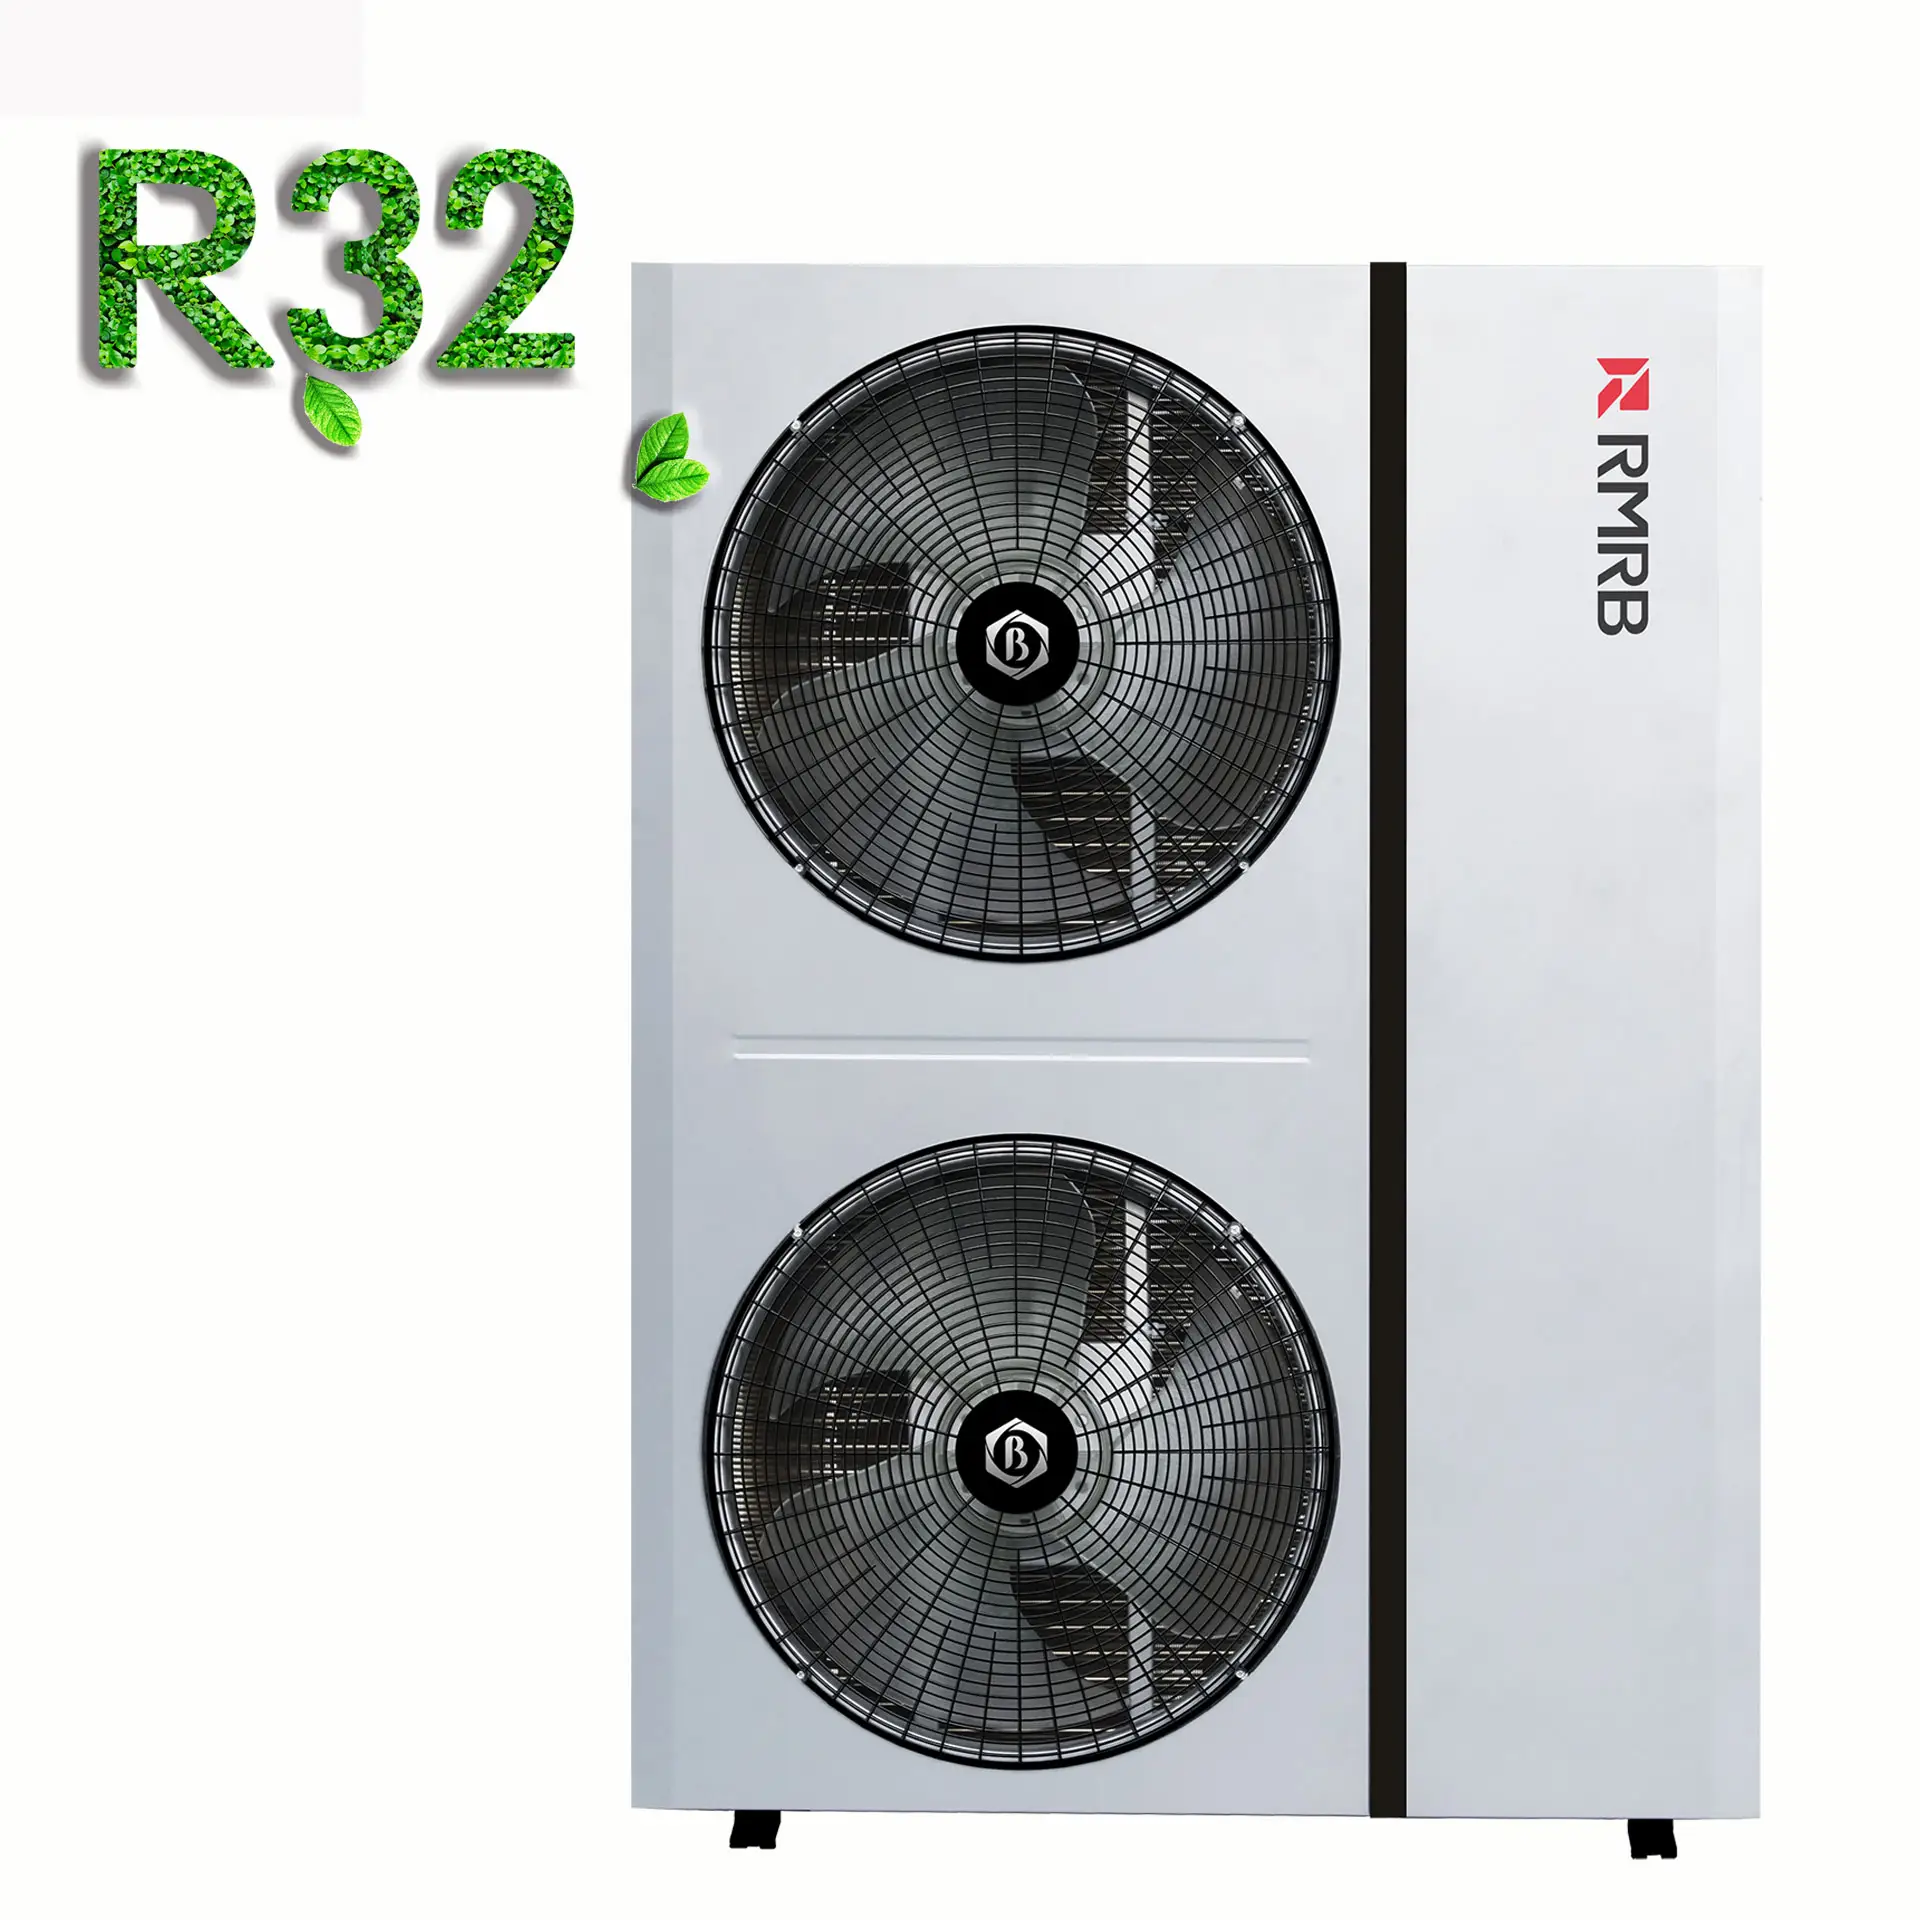 40KW DC Wechsel richter Wärmepumpe Warmwasser bereiter Luft quelle Heizung Warmwasser bereiter R32 Kältemittel